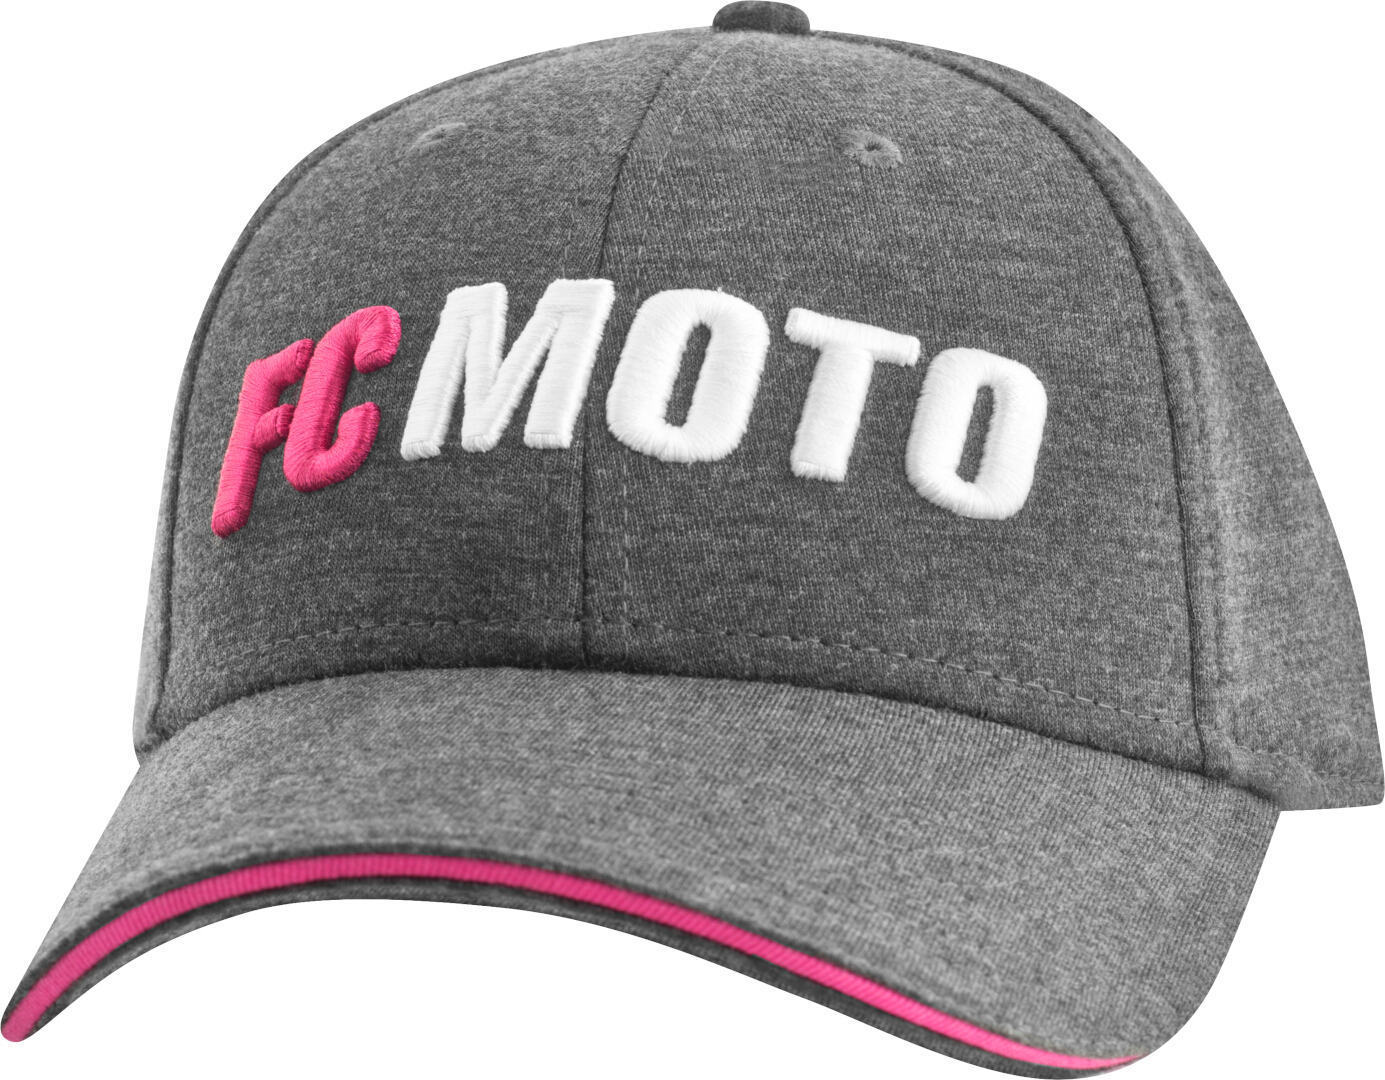 Кепка женская FC-Moto FCM-Crew, серый/розовый кепка женская меховая